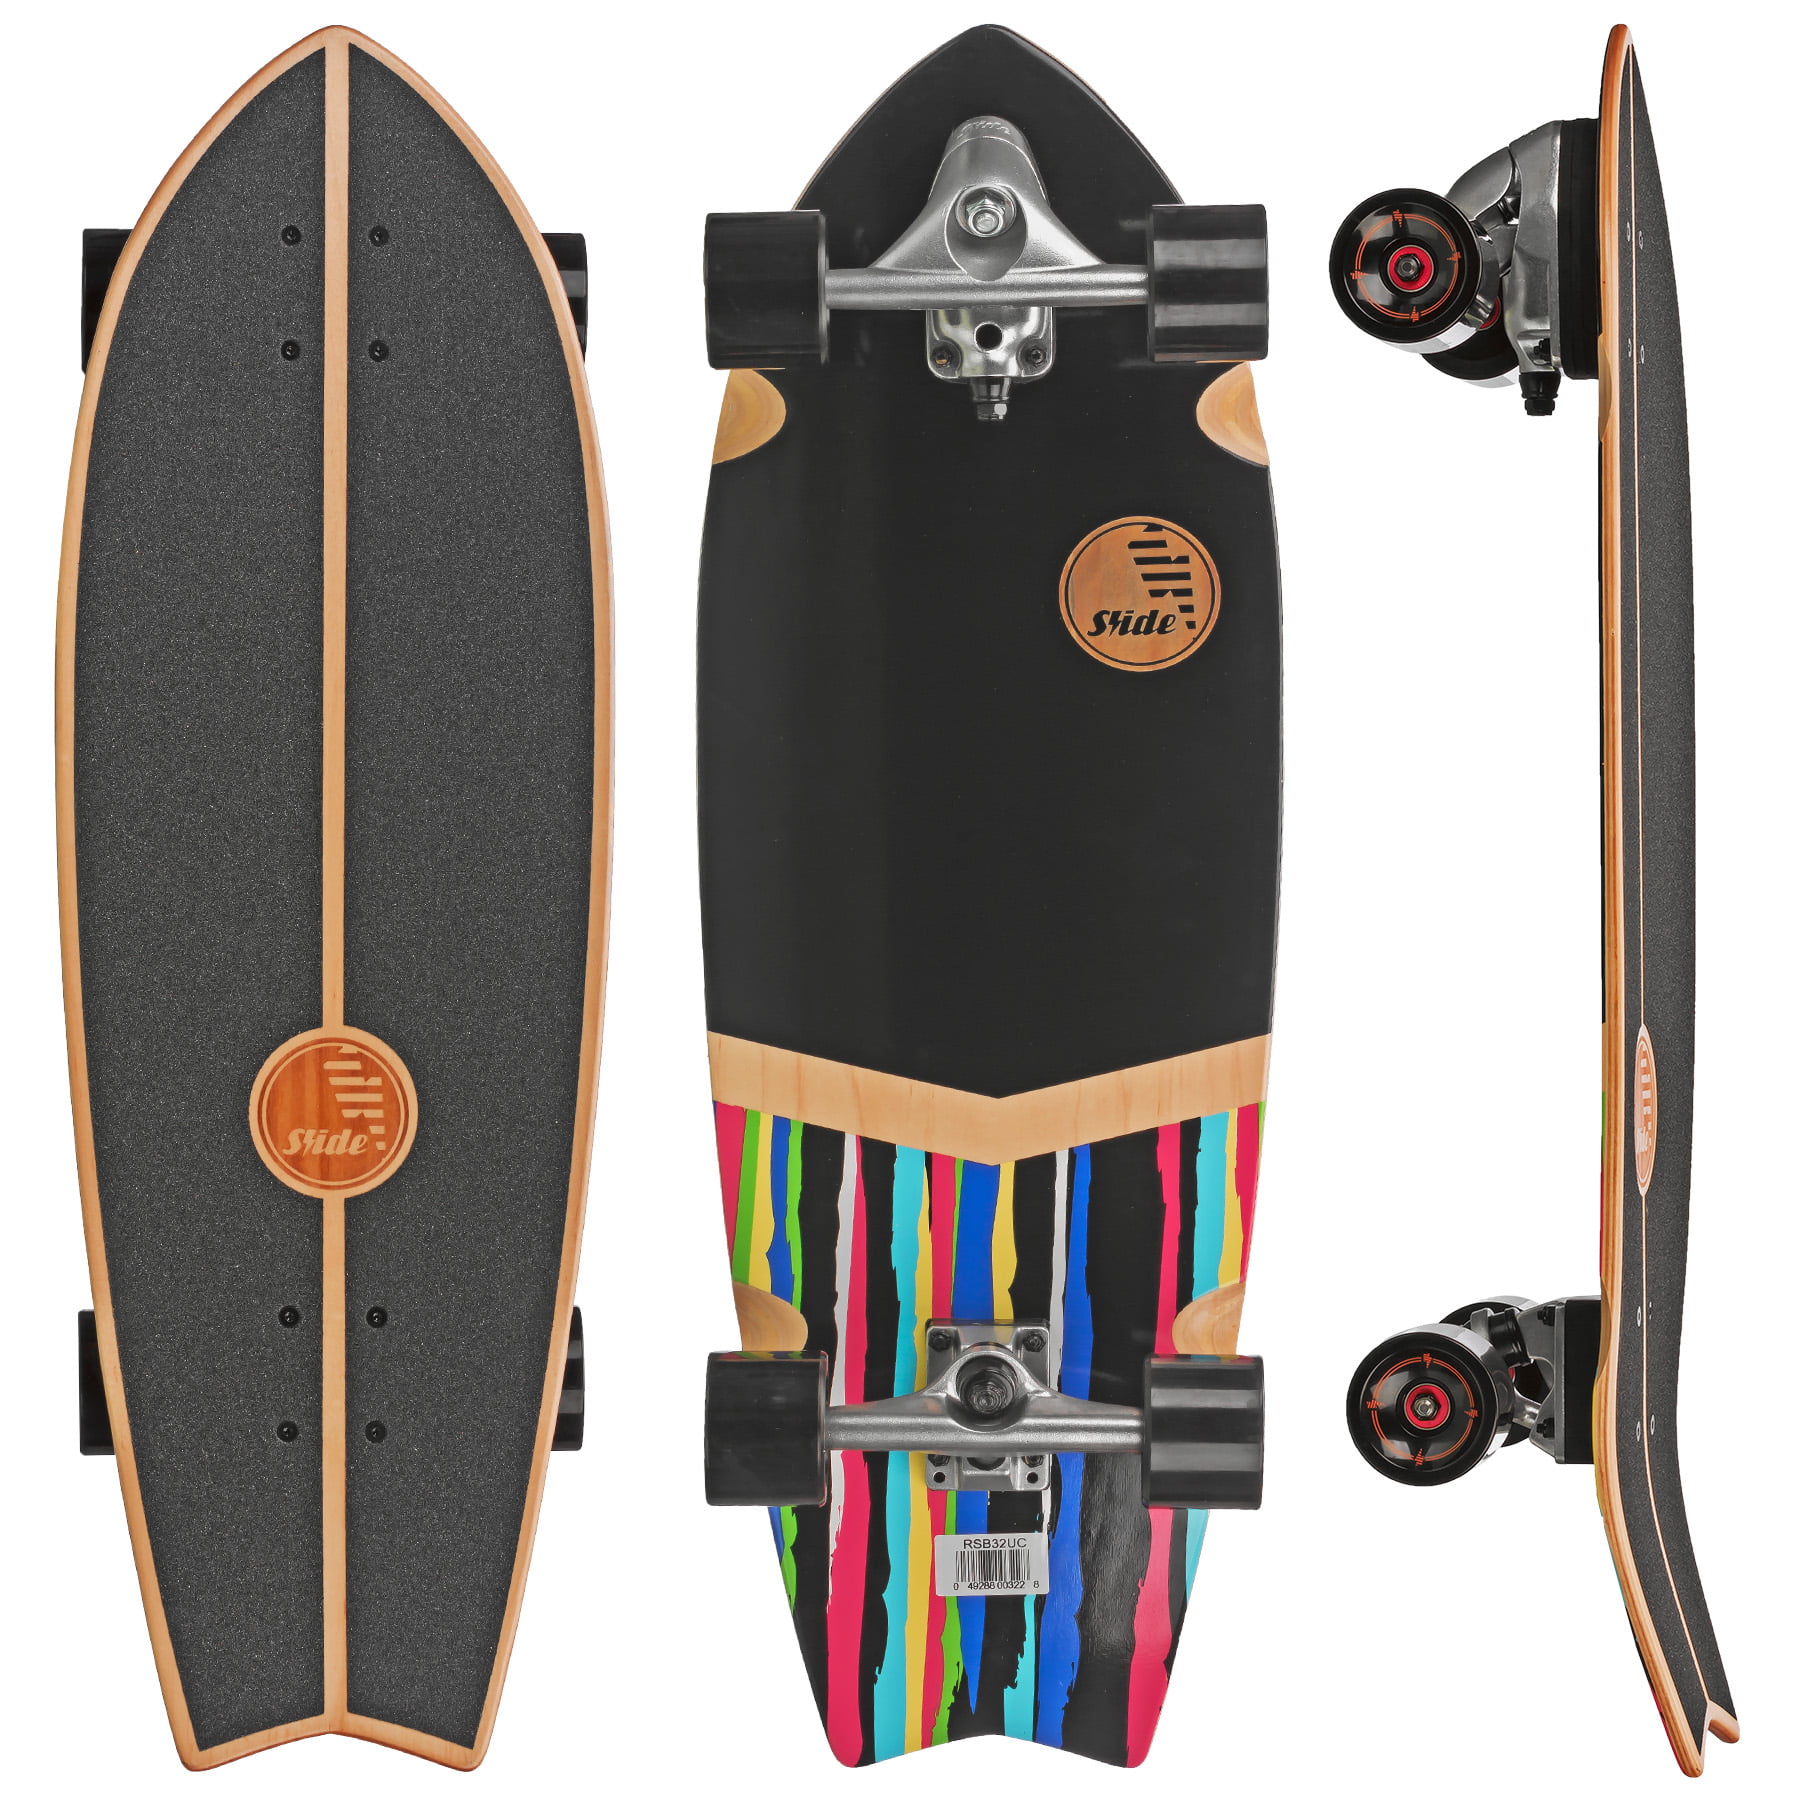 Slide Street Surf Skateboard